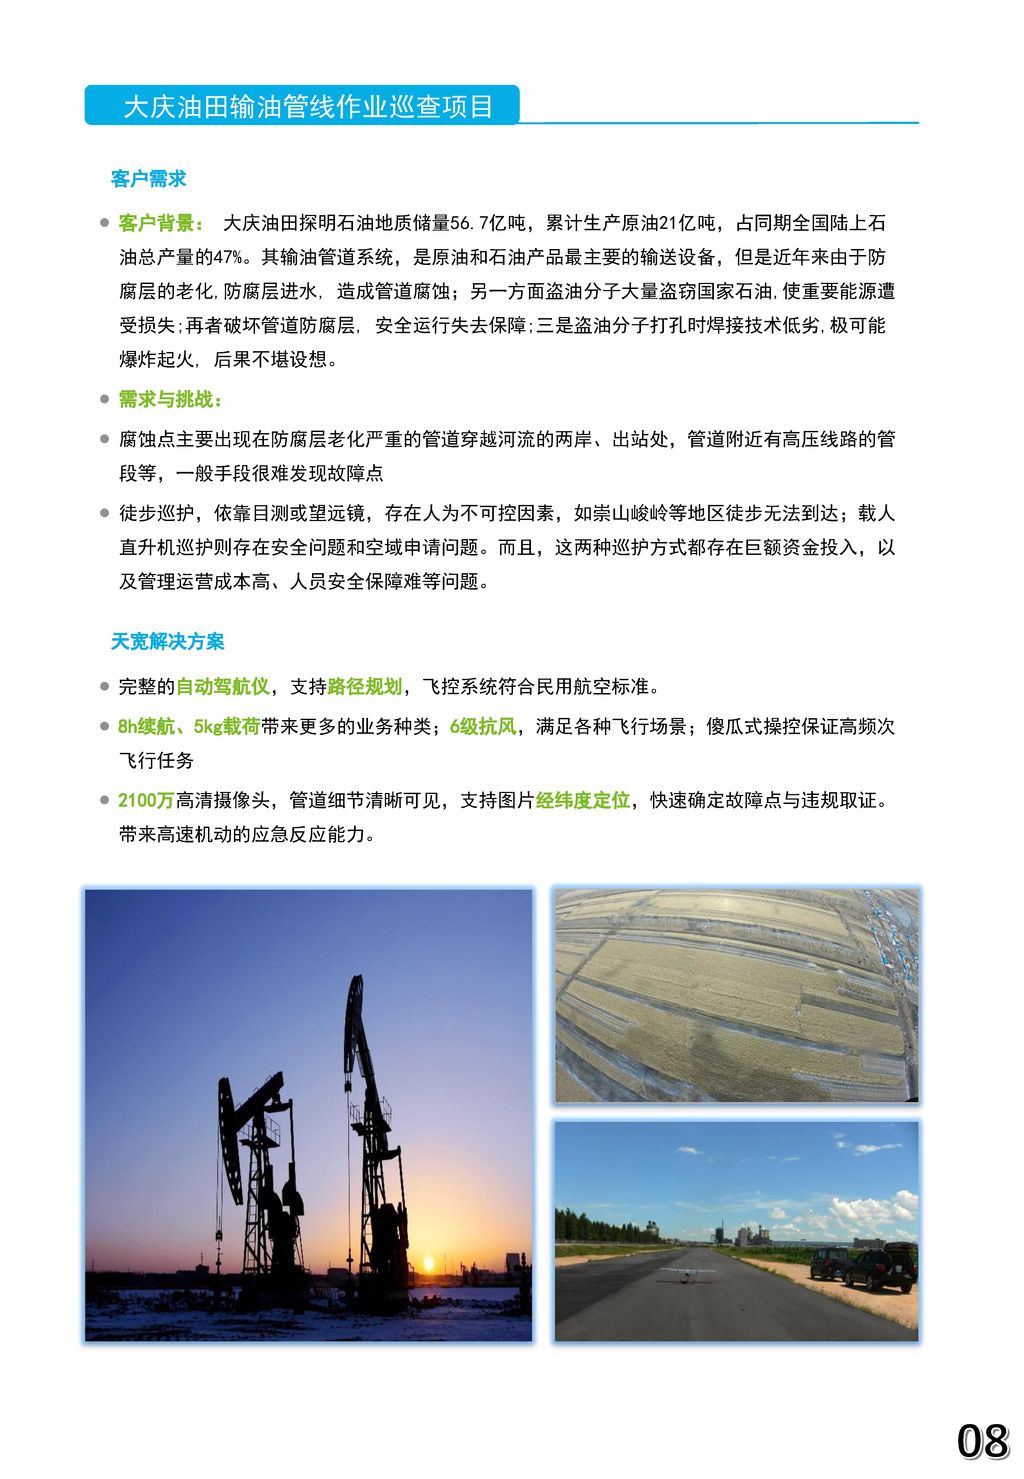 大庆油田输油管线作业巡查项目 客户需求.